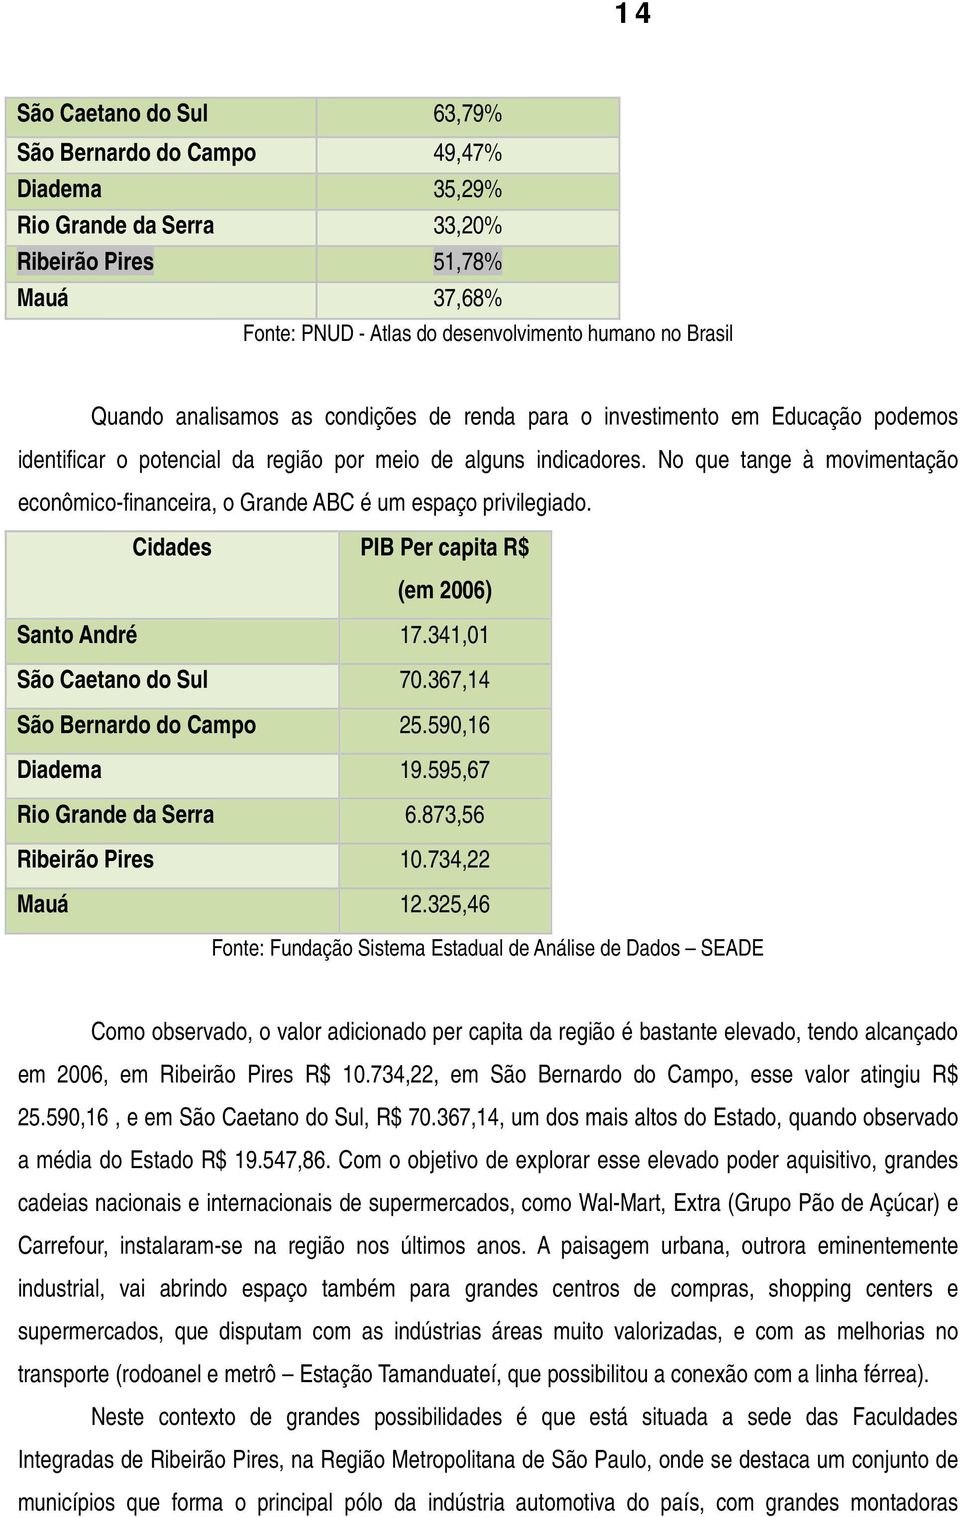 No que tange à movimentação econômico-financeira, o Grande ABC é um espaço privilegiado. Cidades PIB Per capita R$ (em 2006) Santo André 17.341,01 São Caetano do Sul 70.